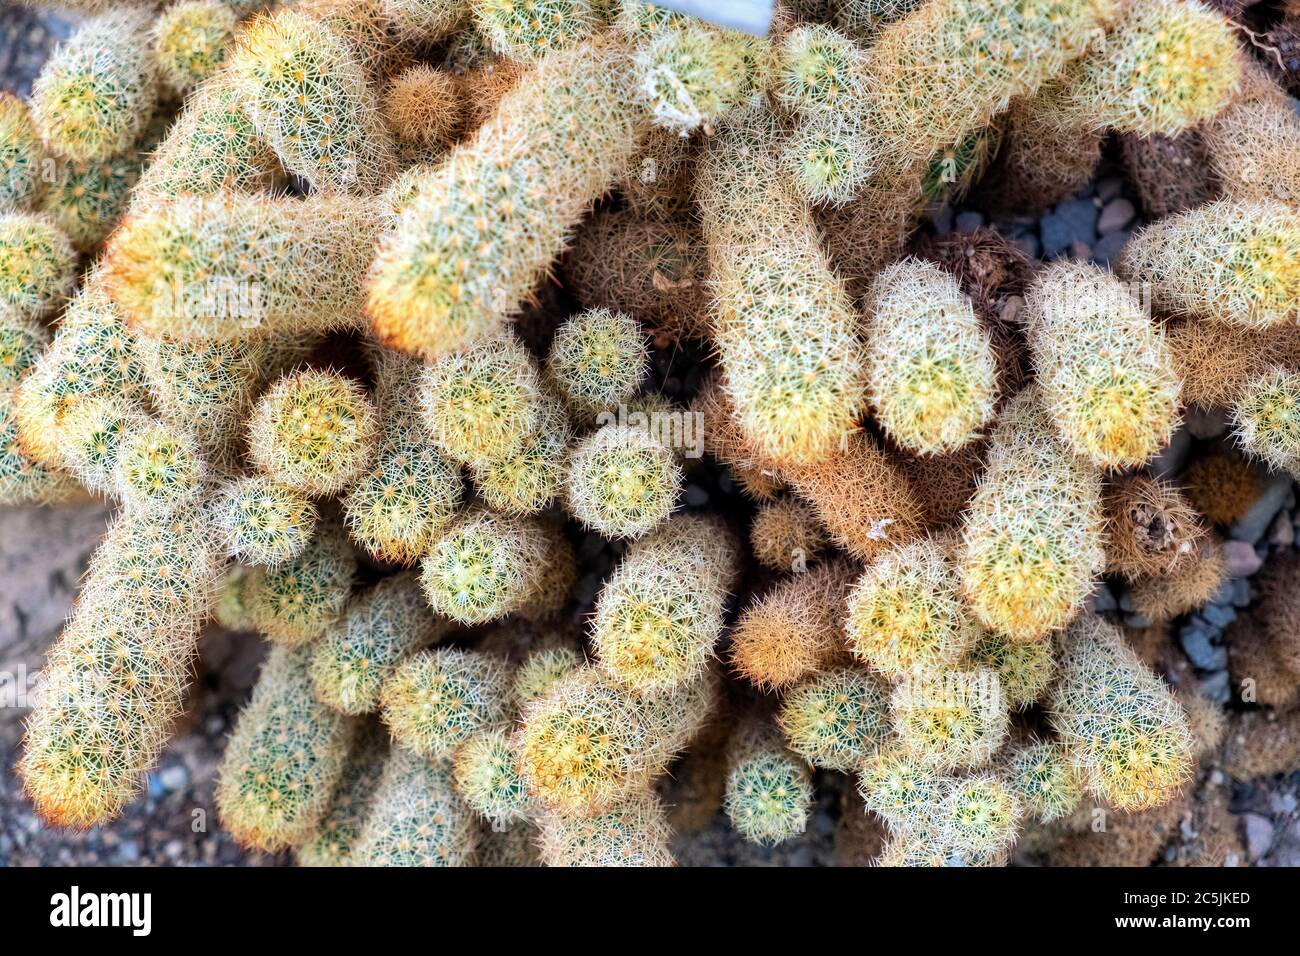 Dickicht der Goldspitze Kaktus Pflanze - latein Mammillaria elongate - auch bekannt als Marienkäfer Kaktus aus Zentralmexiko, in einem botanischen Garten Centr Stockfoto